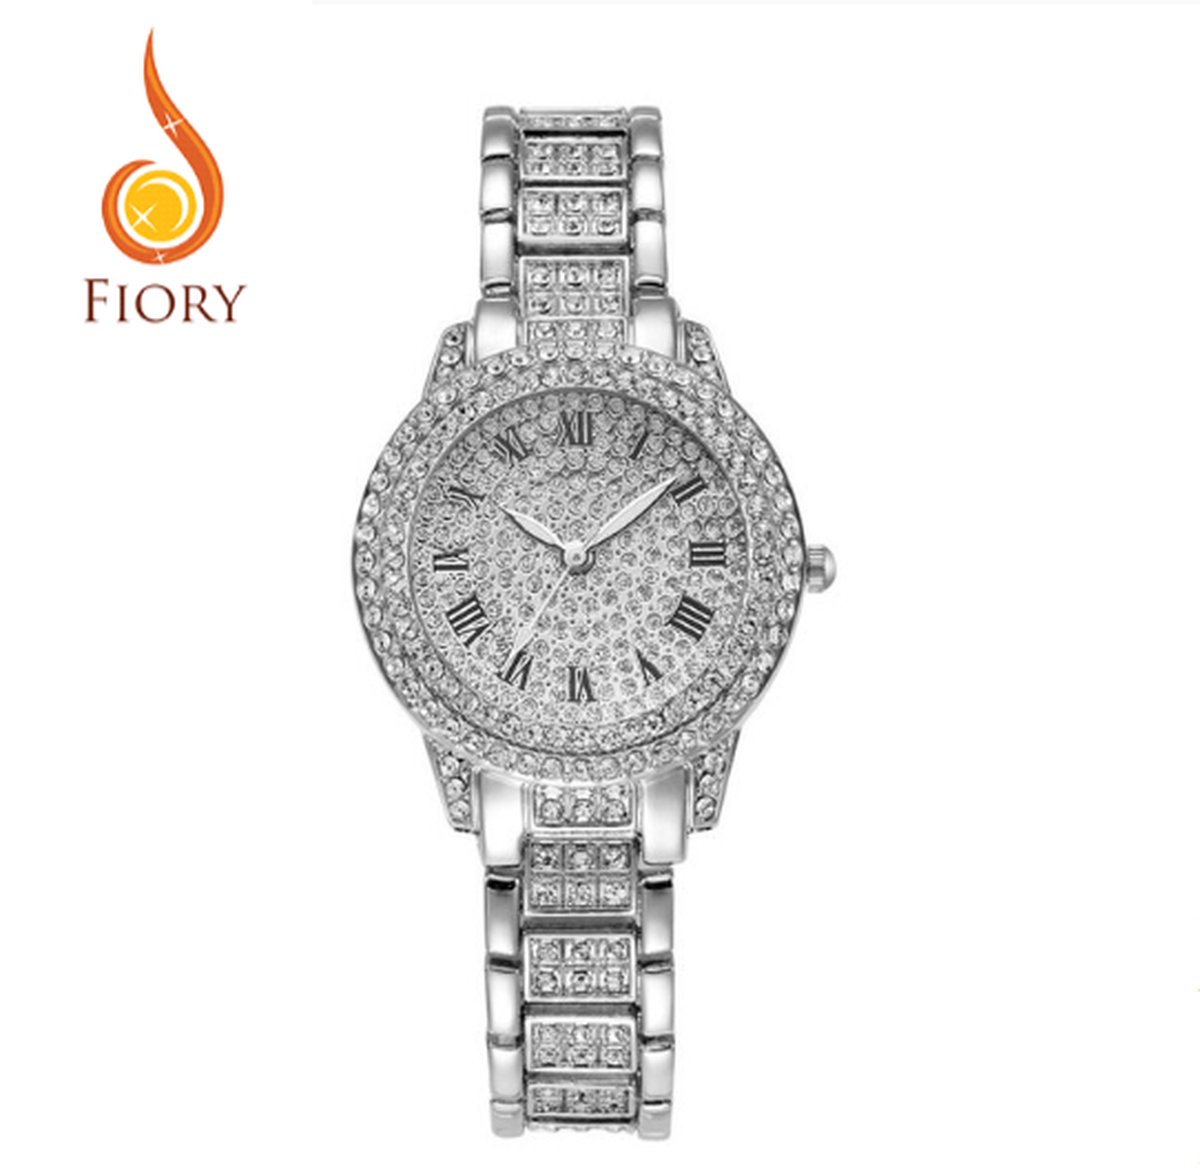 Fiory Horloge D175 | Zilver | Horloge | Unisex| Strass steentjes | Roestvrijstaal | rond| Zilver